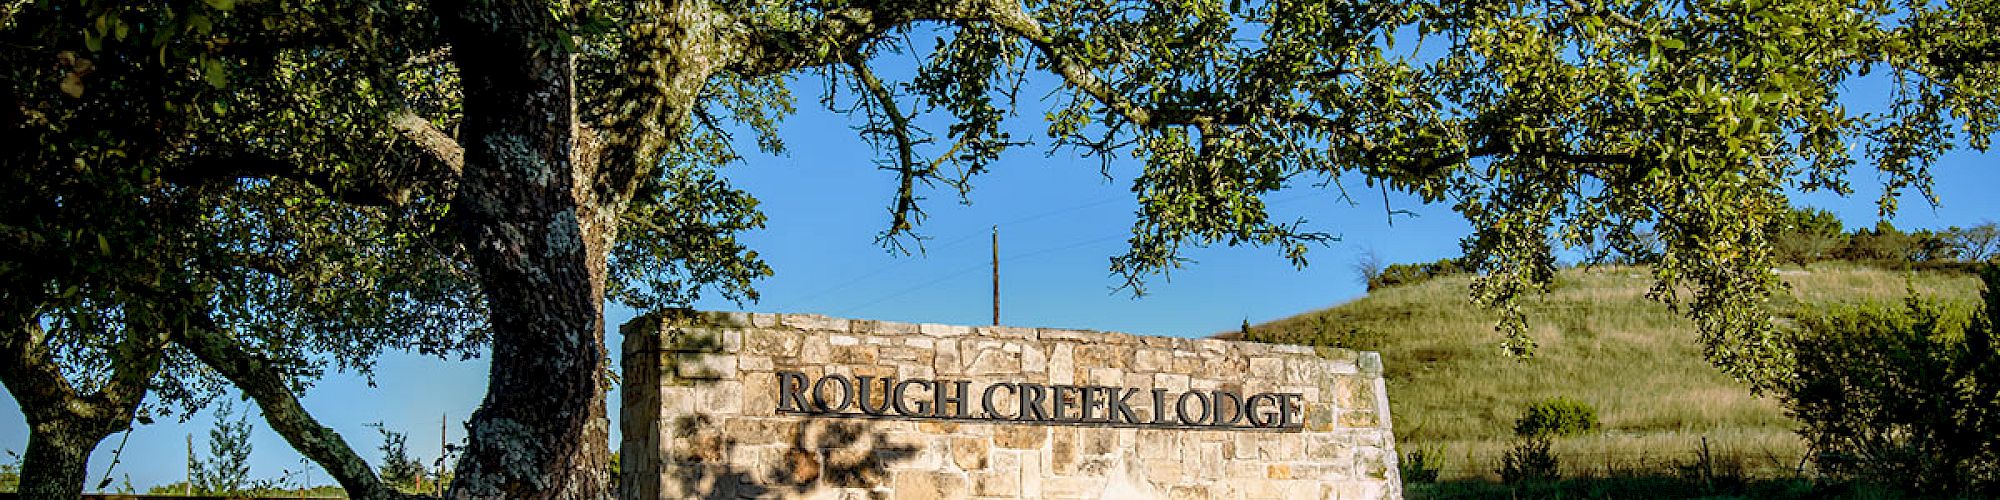 Rough Creek Lodge and Resort